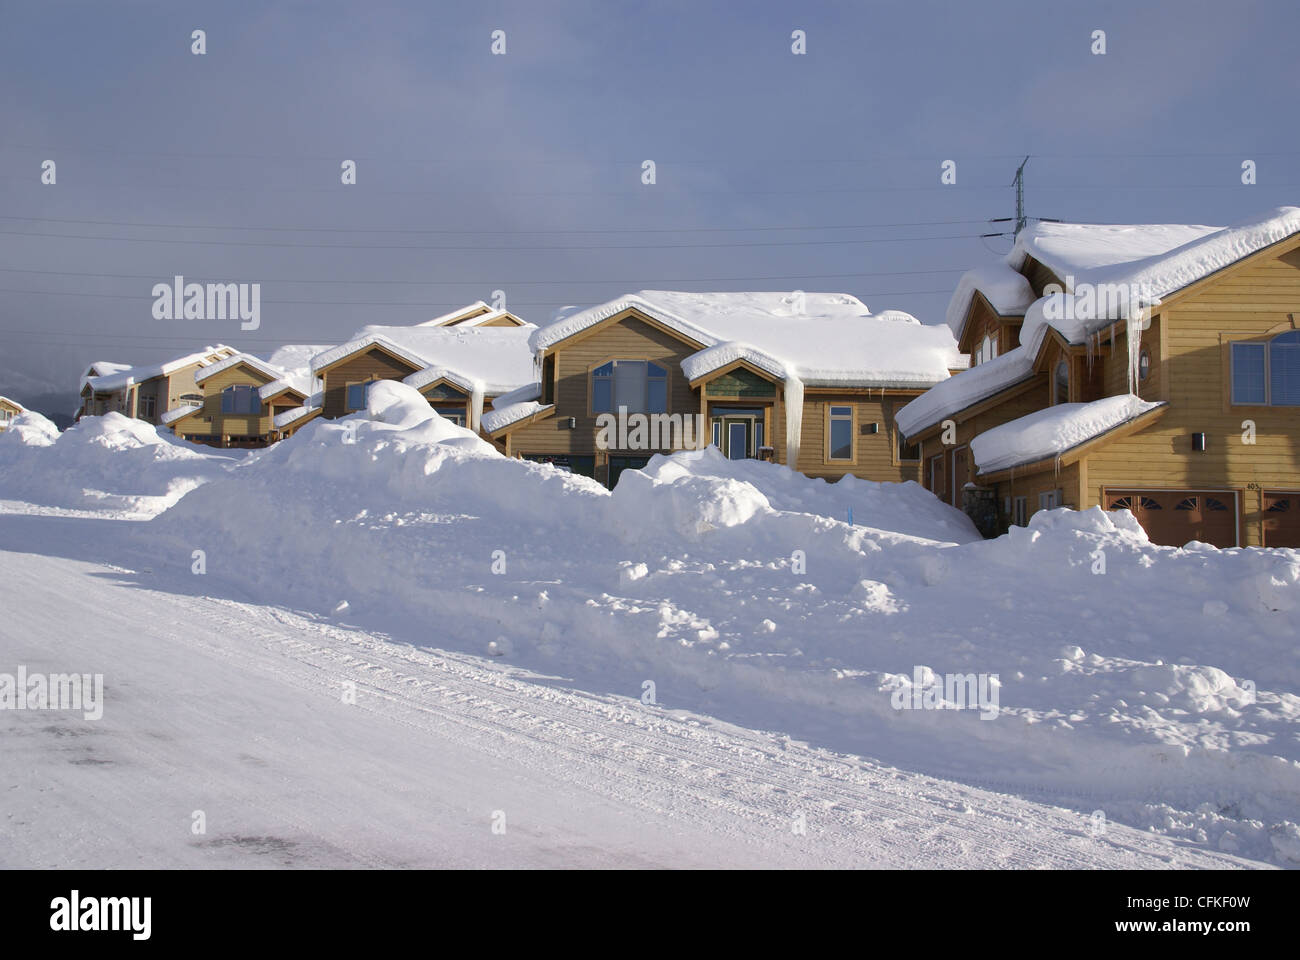 Casas modernas casas condominios edificios adosados de invierno Colorado Rockies brown Snow White Blue Ice icicle weather techo de vivienda Foto de stock